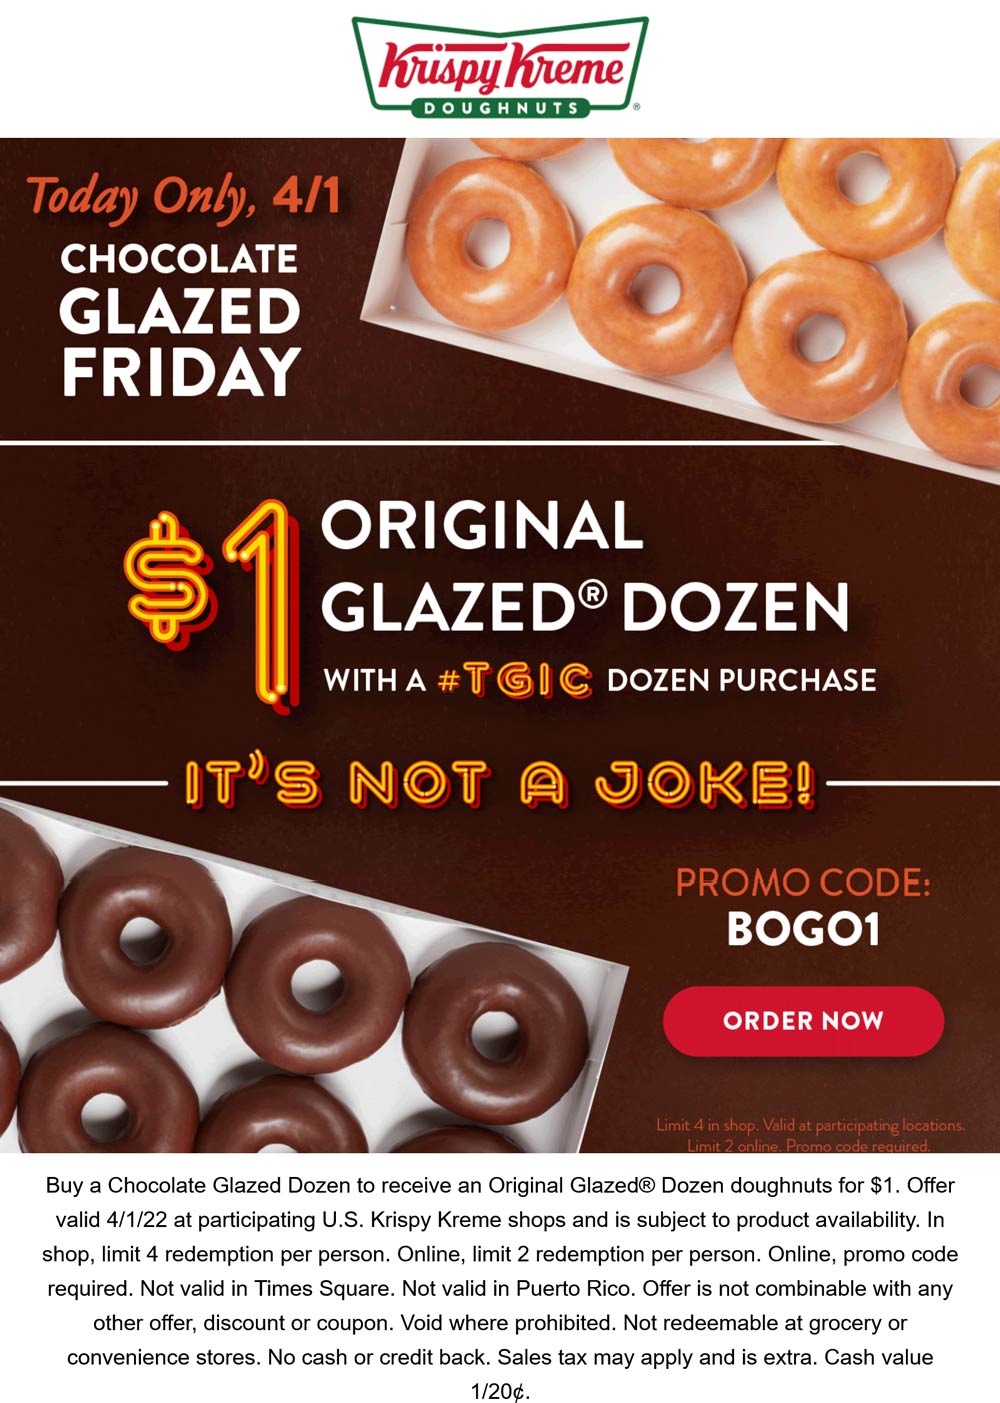 Krispy Kreme restaurants Coupon  Second dozen doughnuts for $1 today at Krispy Kreme #krispykreme 